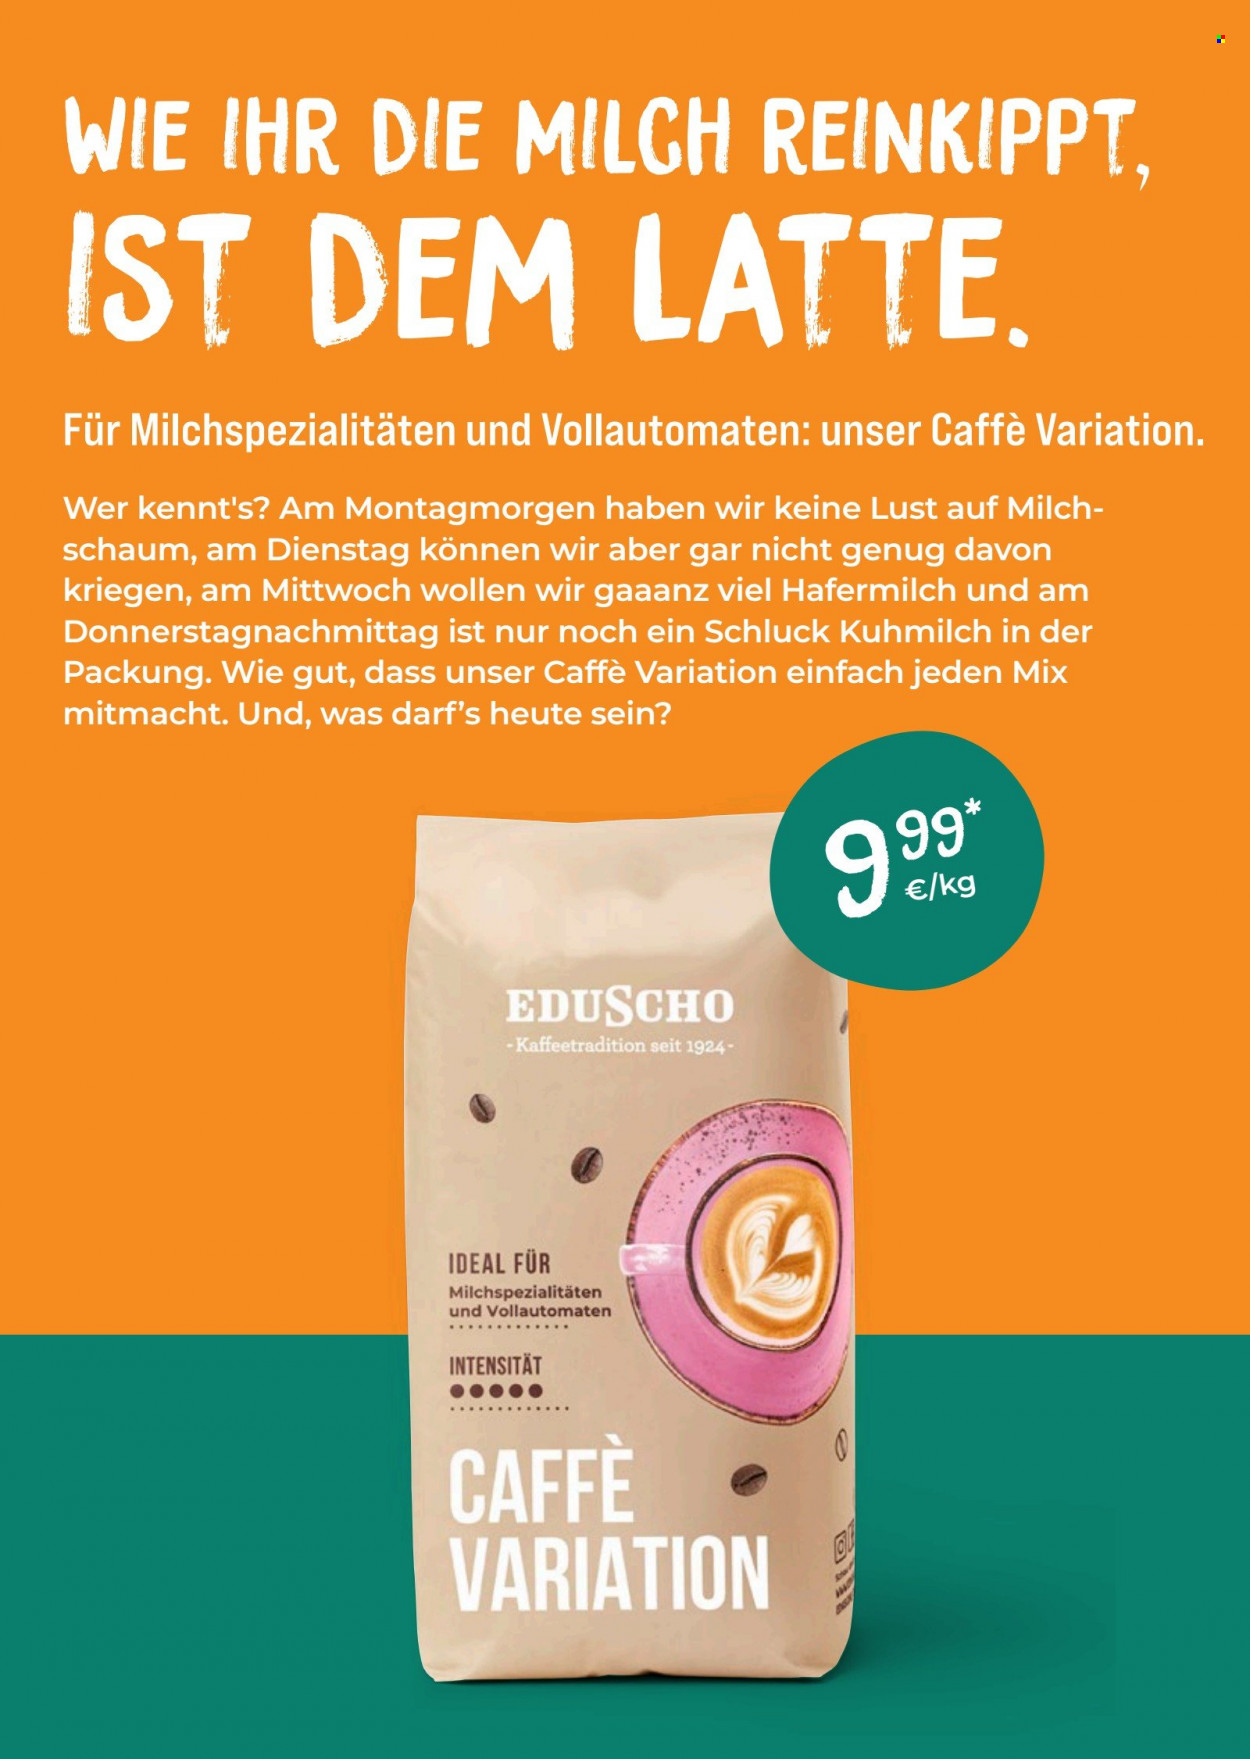 thumbnail - Prospekte Tchibo - Produkte in Aktion - Kaffee, Eduscho. Seite 38.